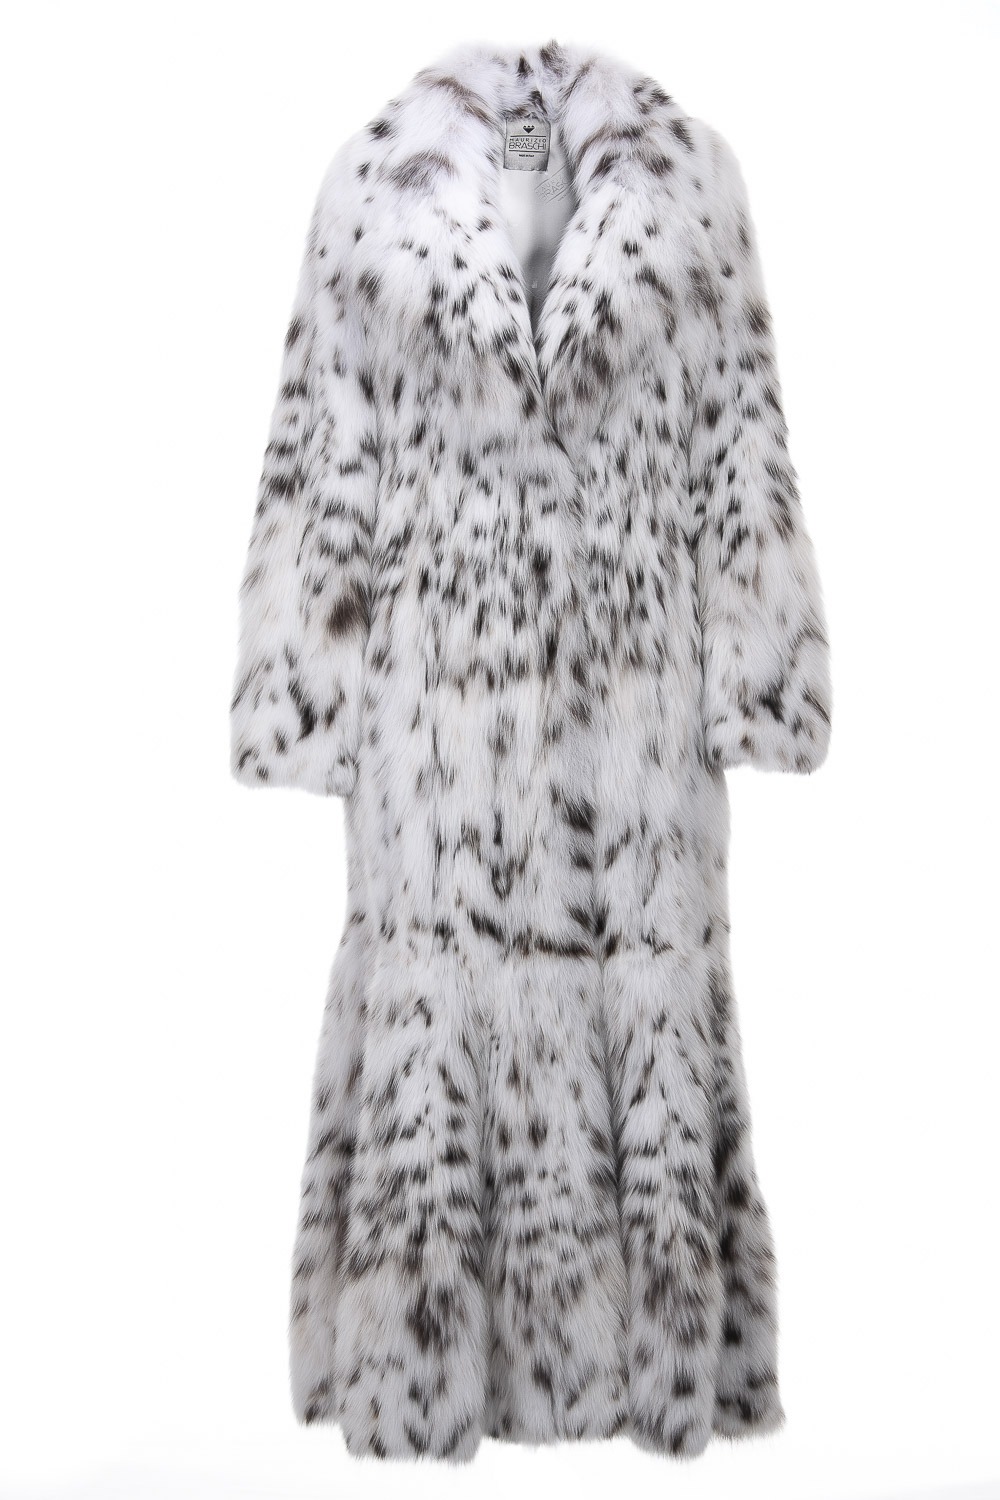 Canadian Lynx Fur Coats